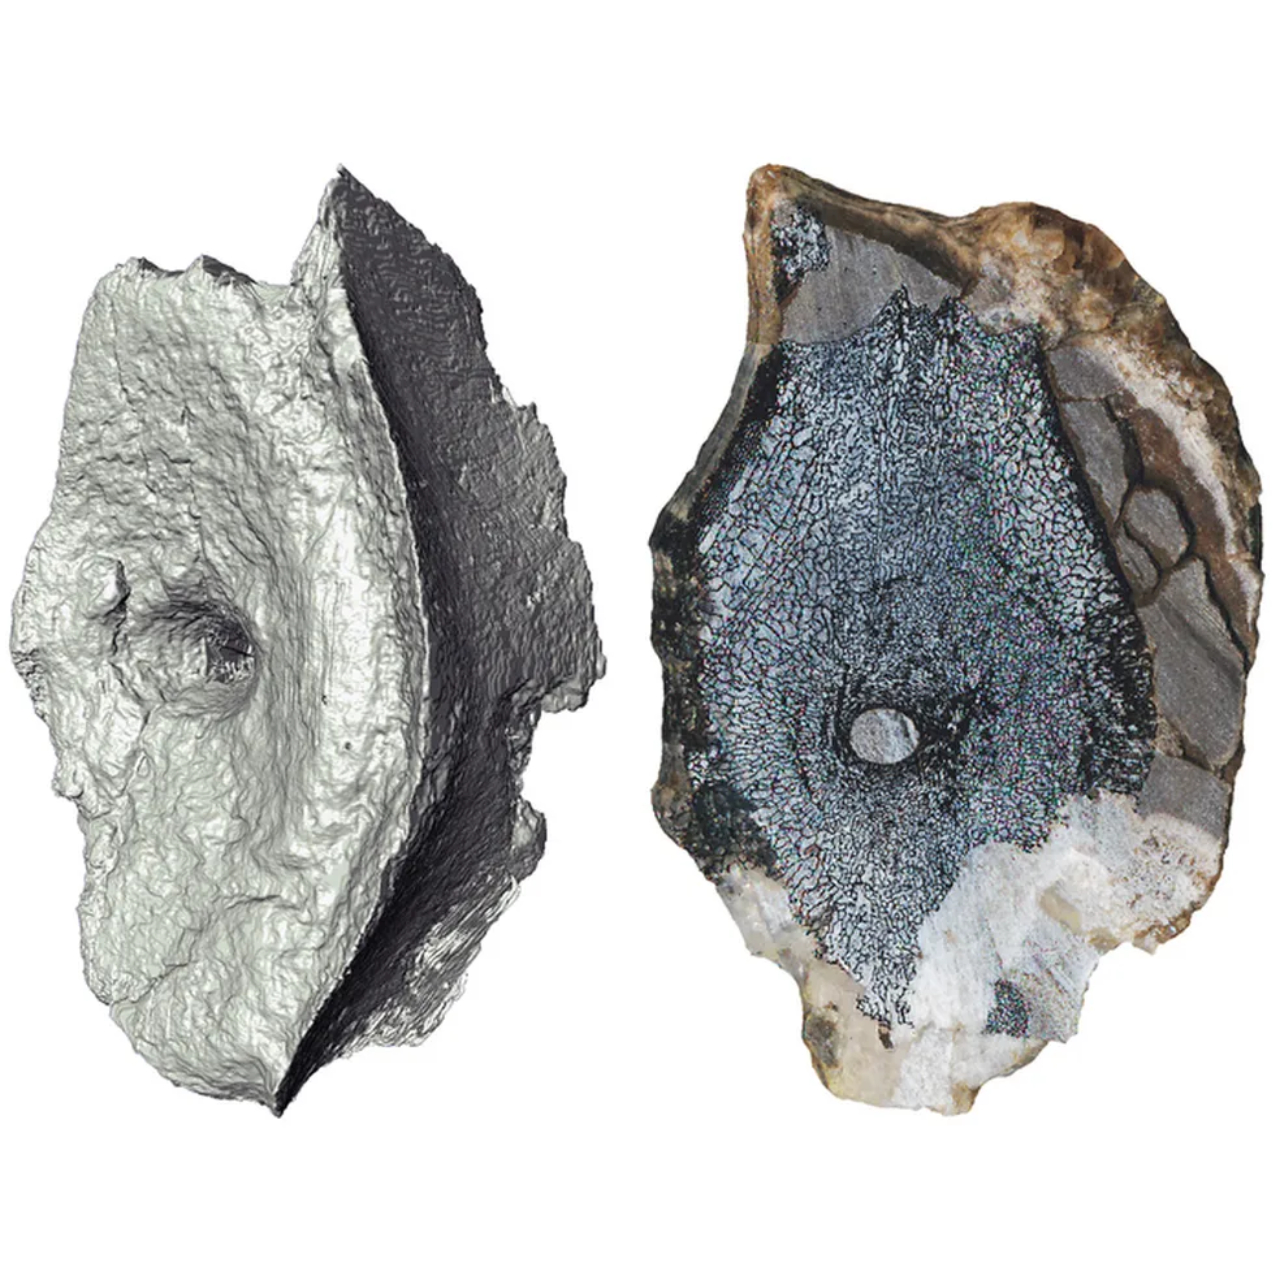 Tomografia computadorizada das vértebras do ictiossauro mais antigo já descoberto